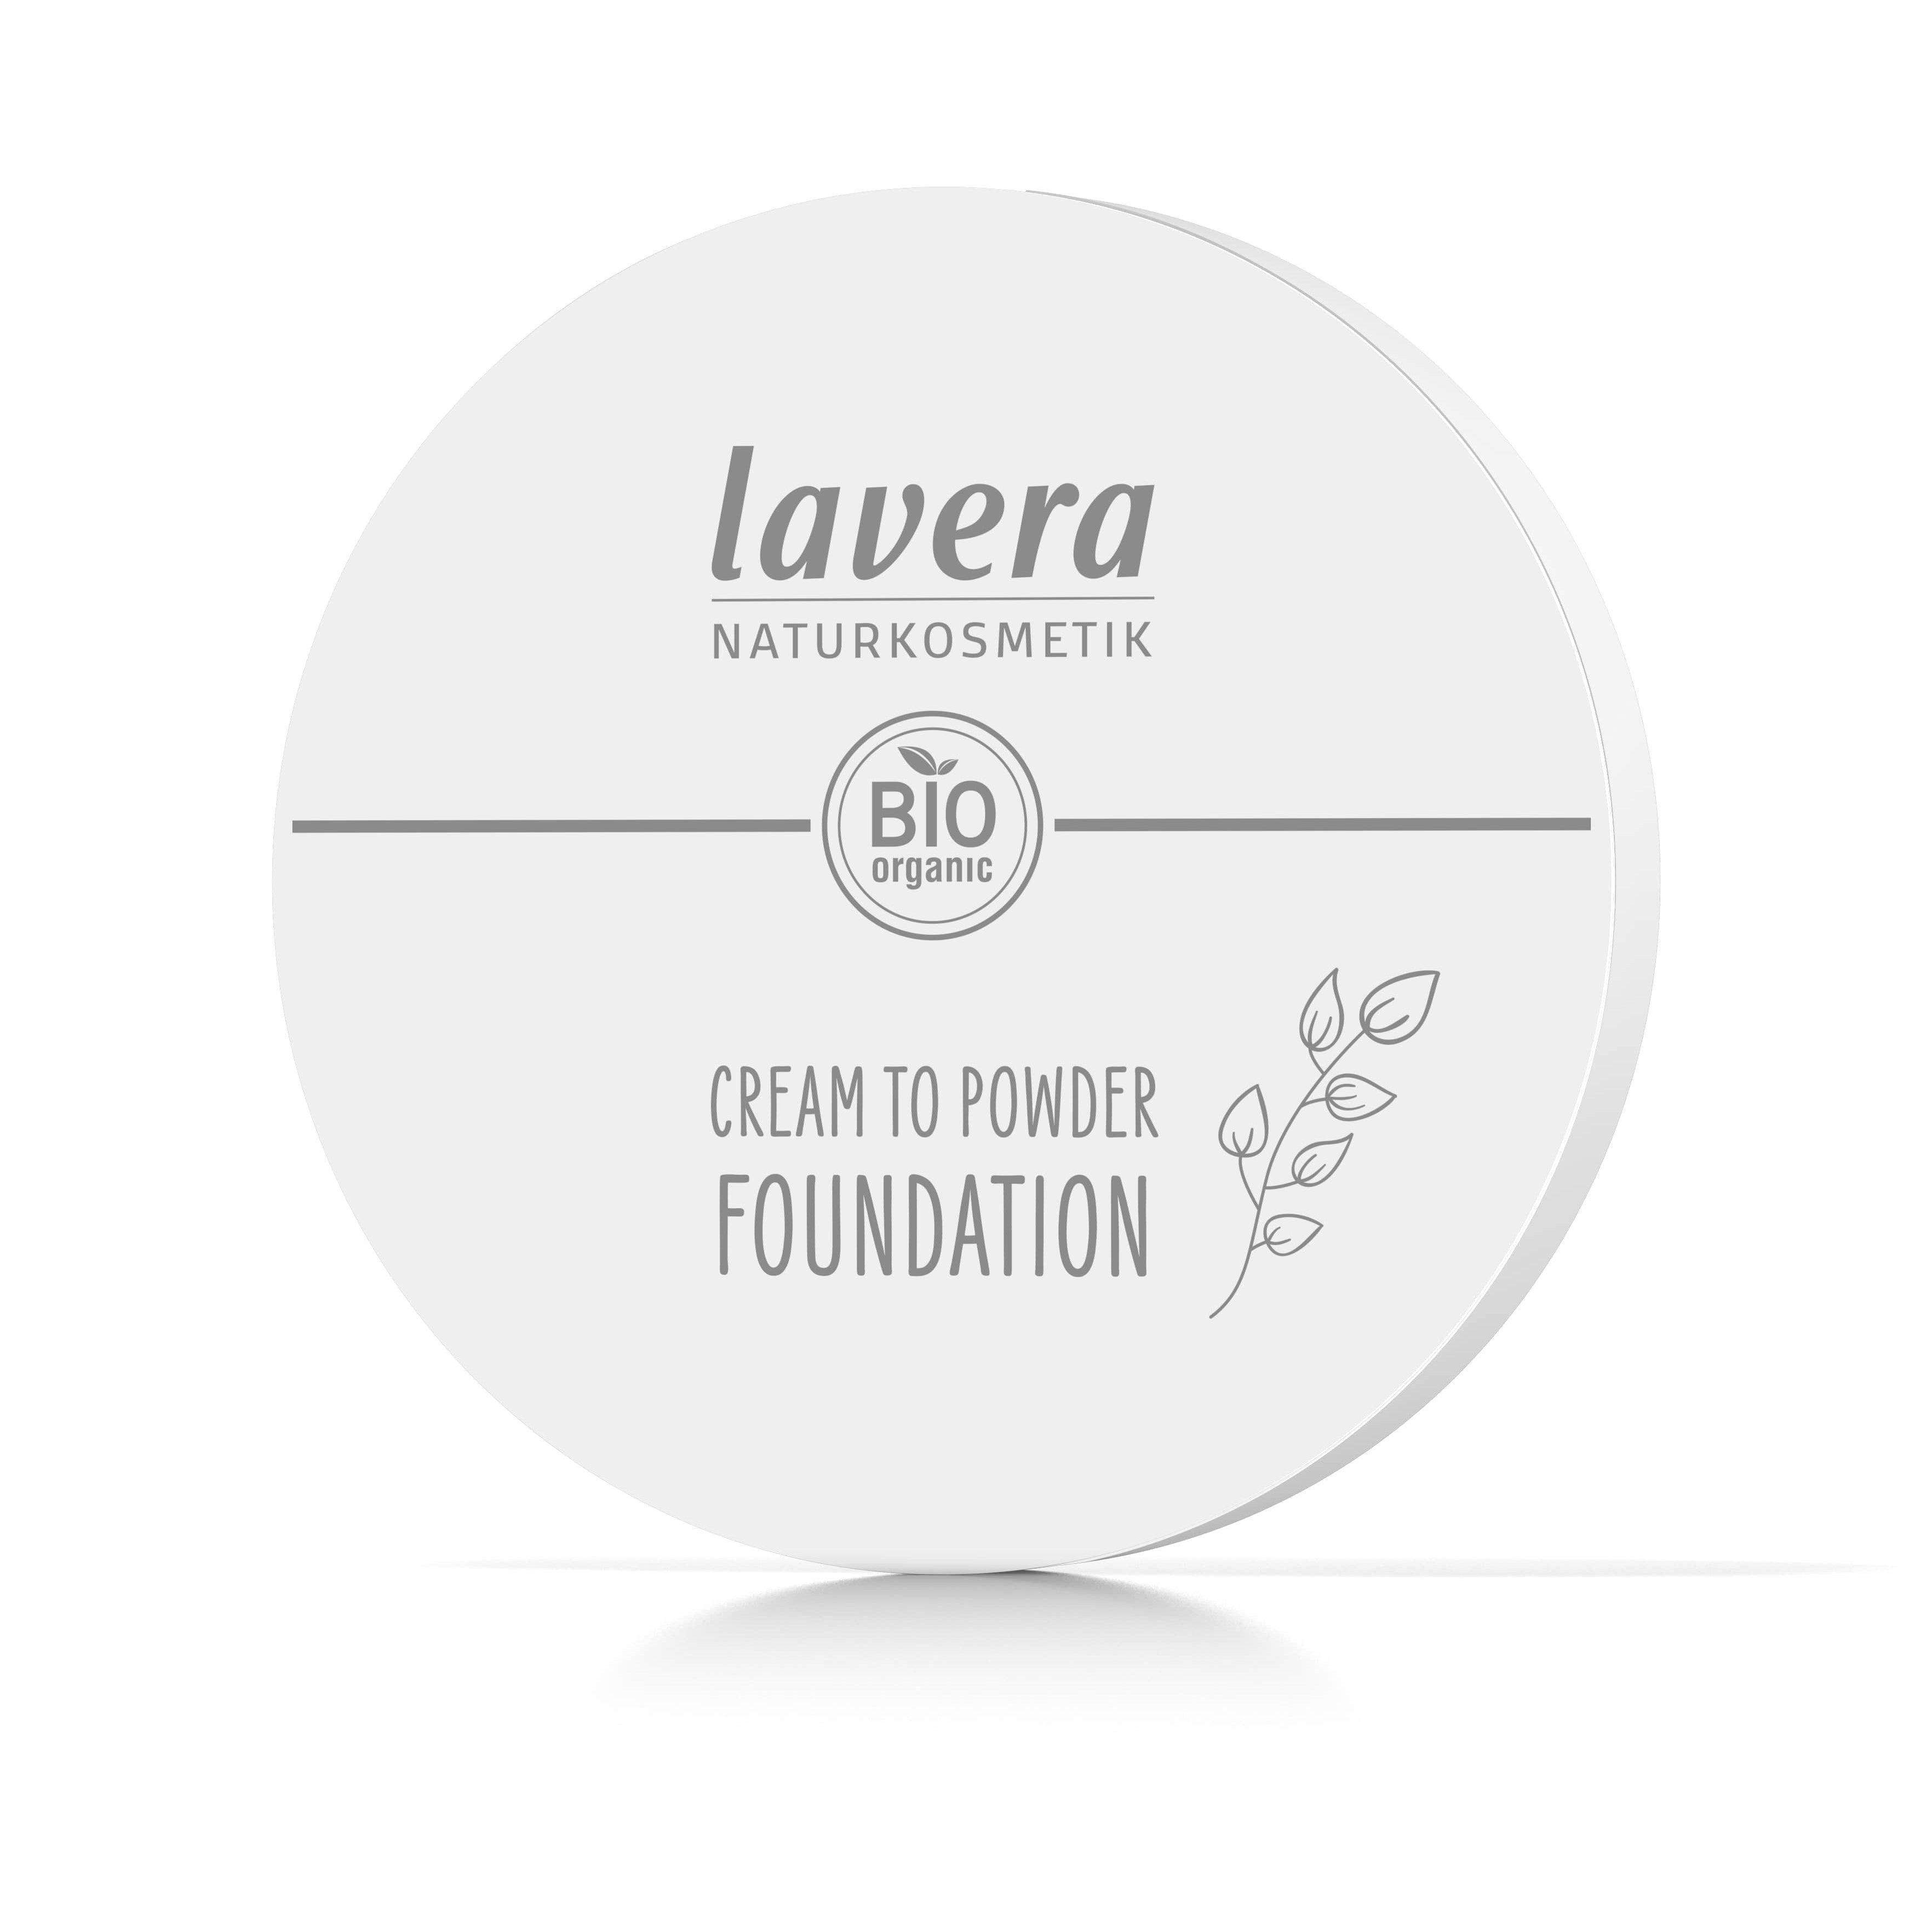 Lavera Cream to Powder Foundation meikkivoide, tanned 02